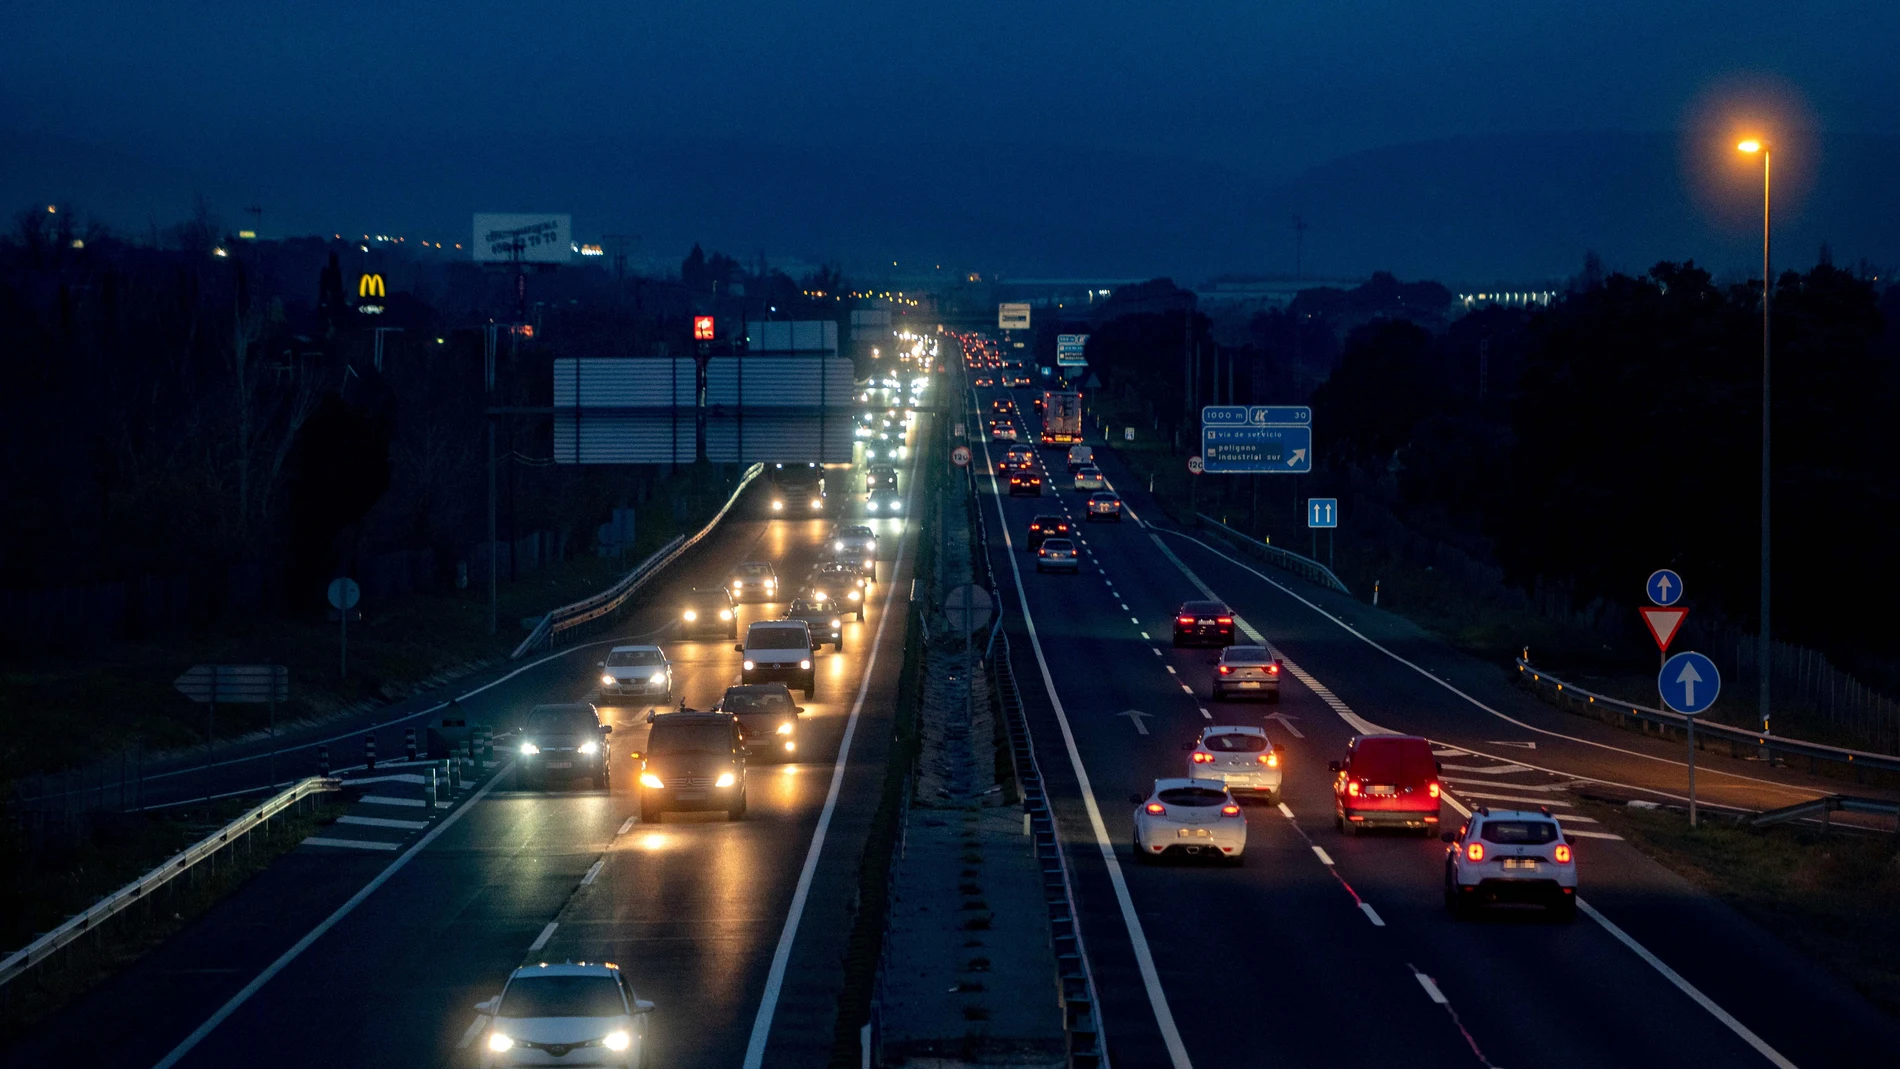 El exceso de velocidad conlleva sanción económica de 100 a 600 euros y pérdida de 2, 4 ó 6 puntos del permiso de conducir | Fuente: Alberto Ortega / Europa Press